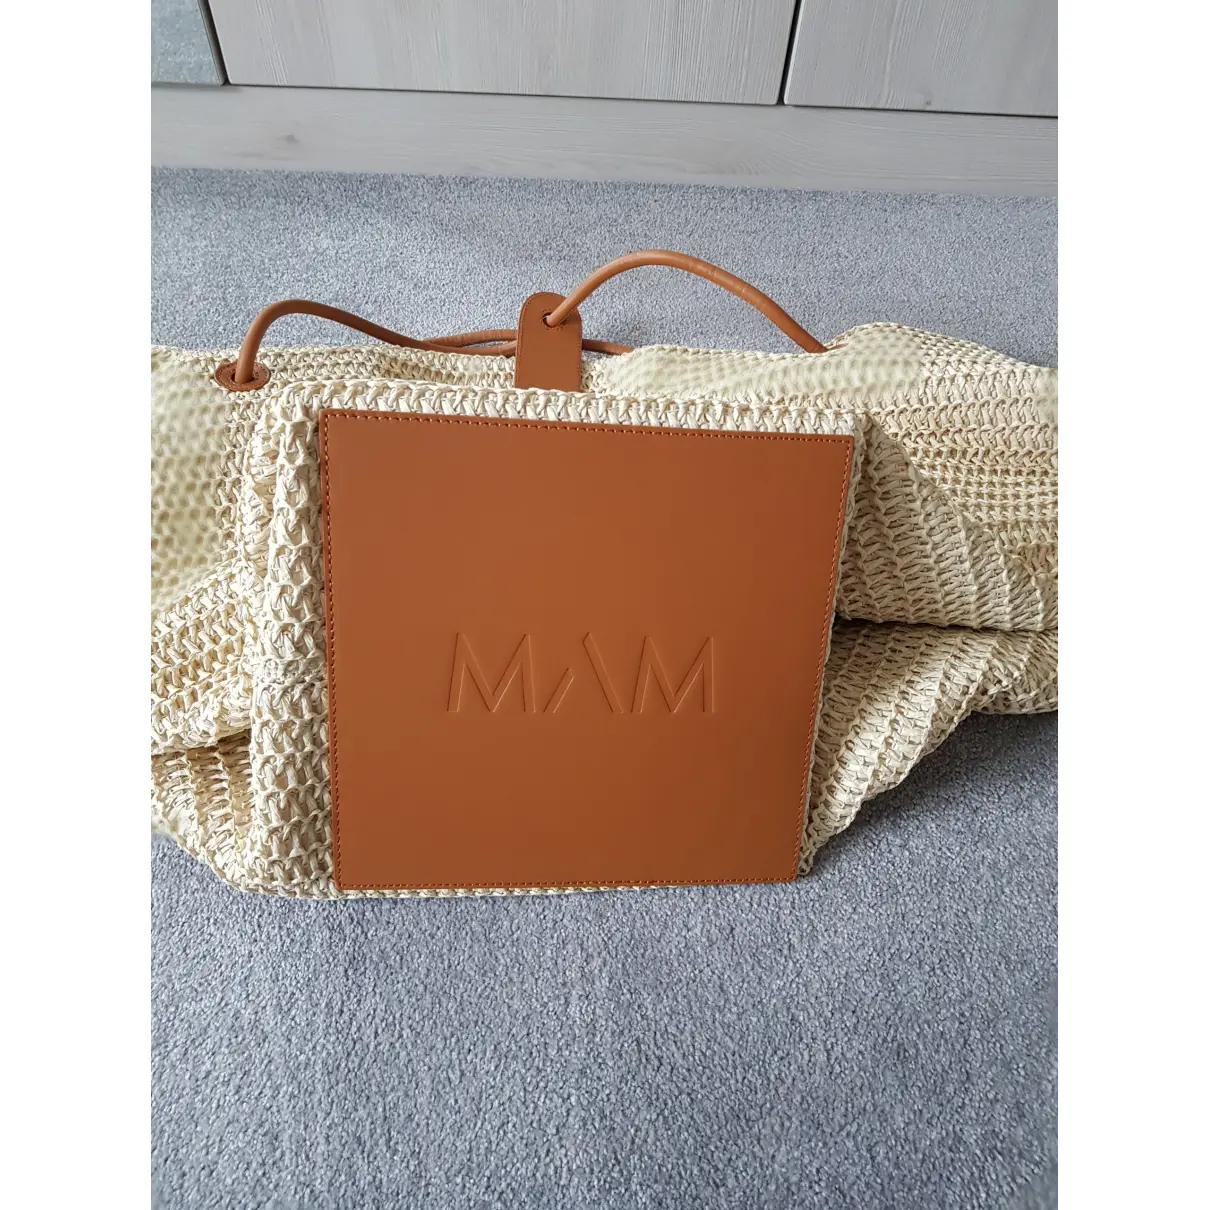 Luxury MAM Handbags Women